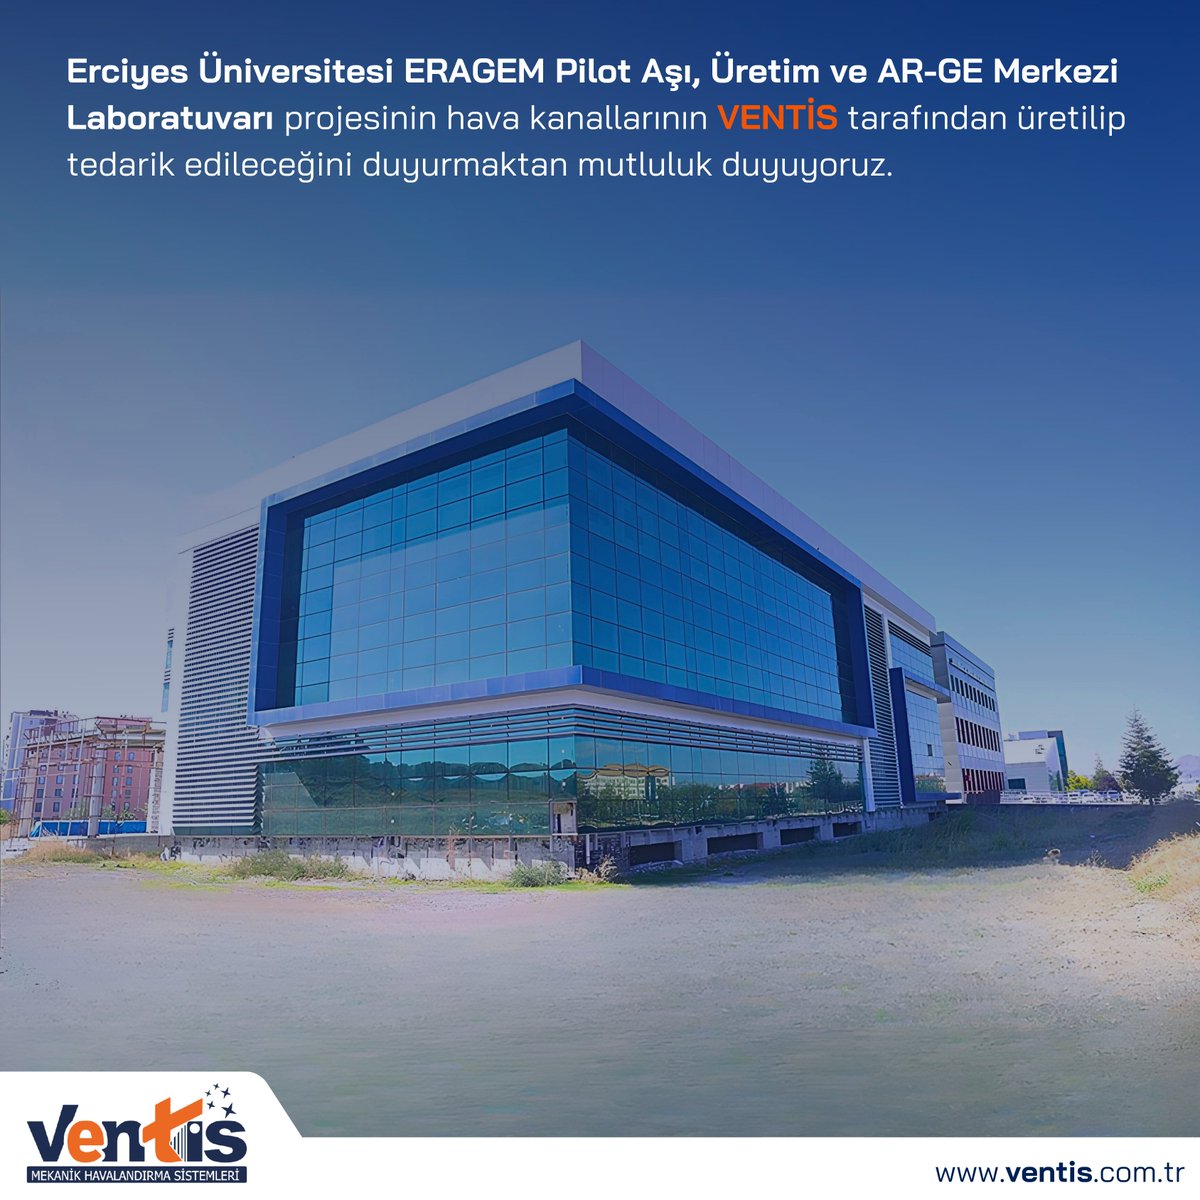 📢 Erciyes Üniversitesi ERAGEM Pilot Aşı, Üretim ve AR-GE Merkezi Laboratuvarı projesinin hava kanallarının VENTİS tarafından üretilip tedarik edileceğini duyurmaktan mutluluk duyuyoruz. #havakanalı #airduct #havalandırma #ventilation #hvac